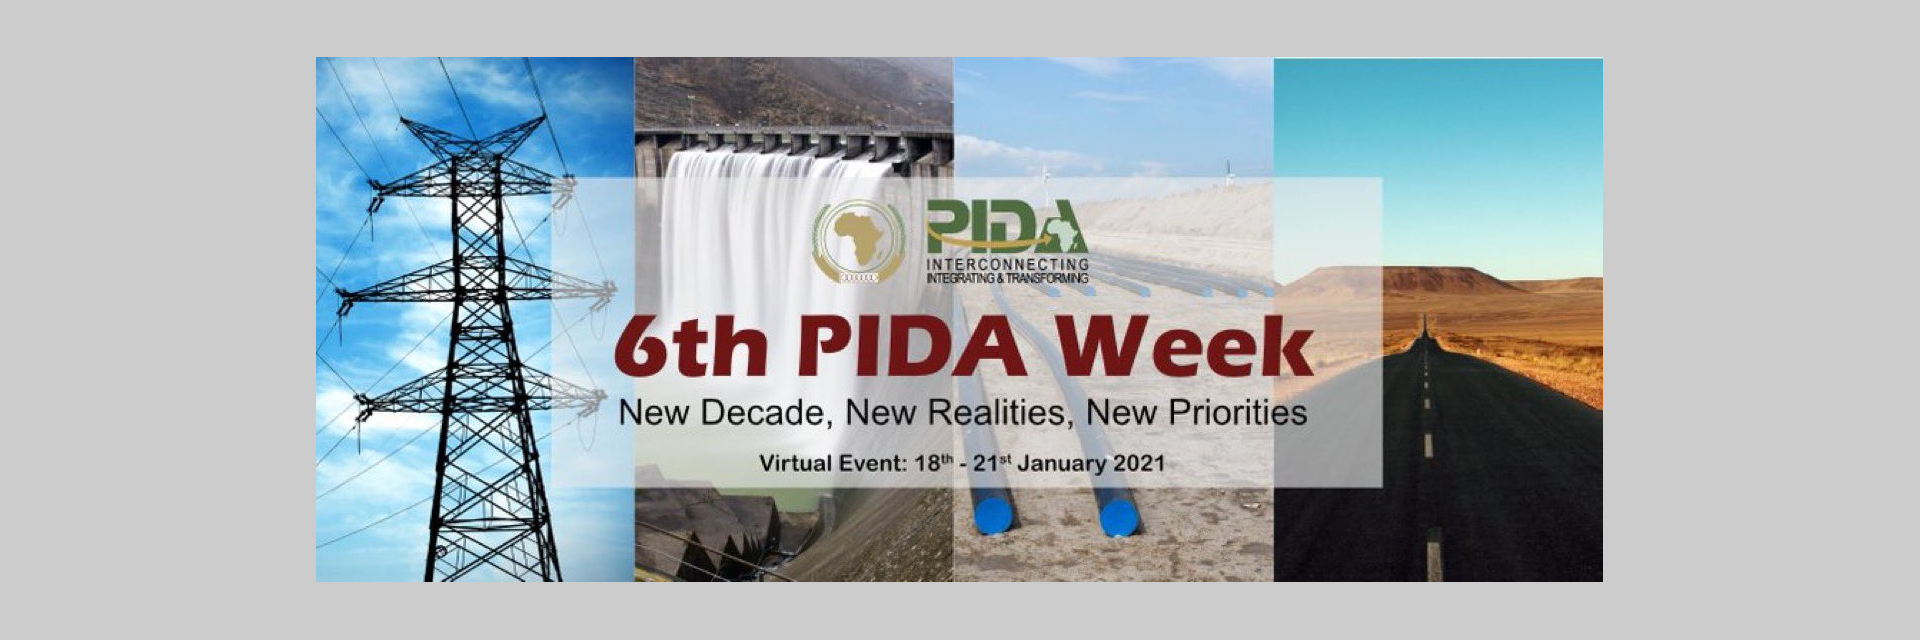 6th PIDA Week